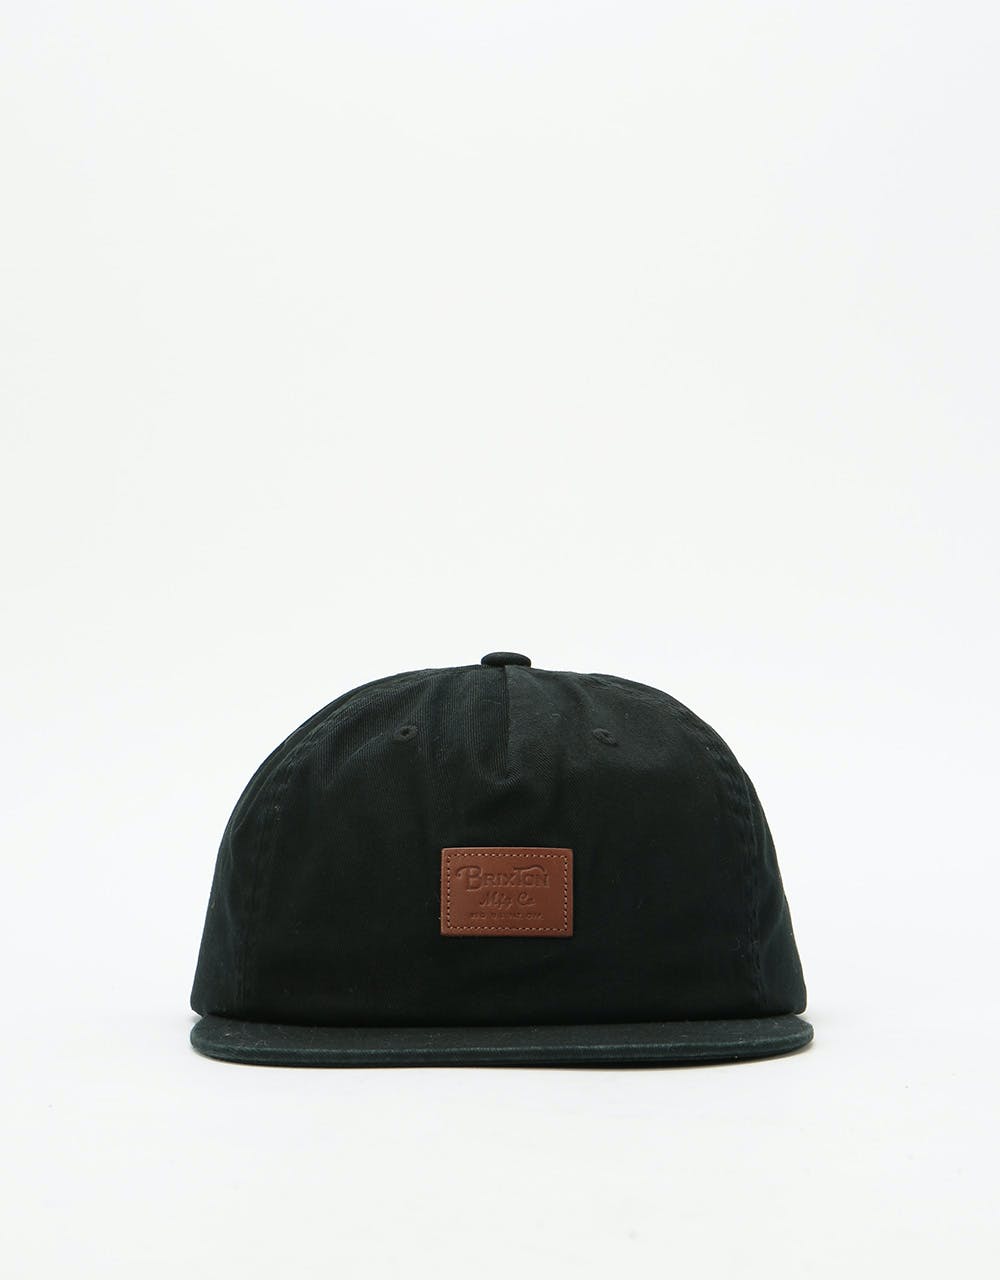 Brixton Grade II Snapback Cap  - Black